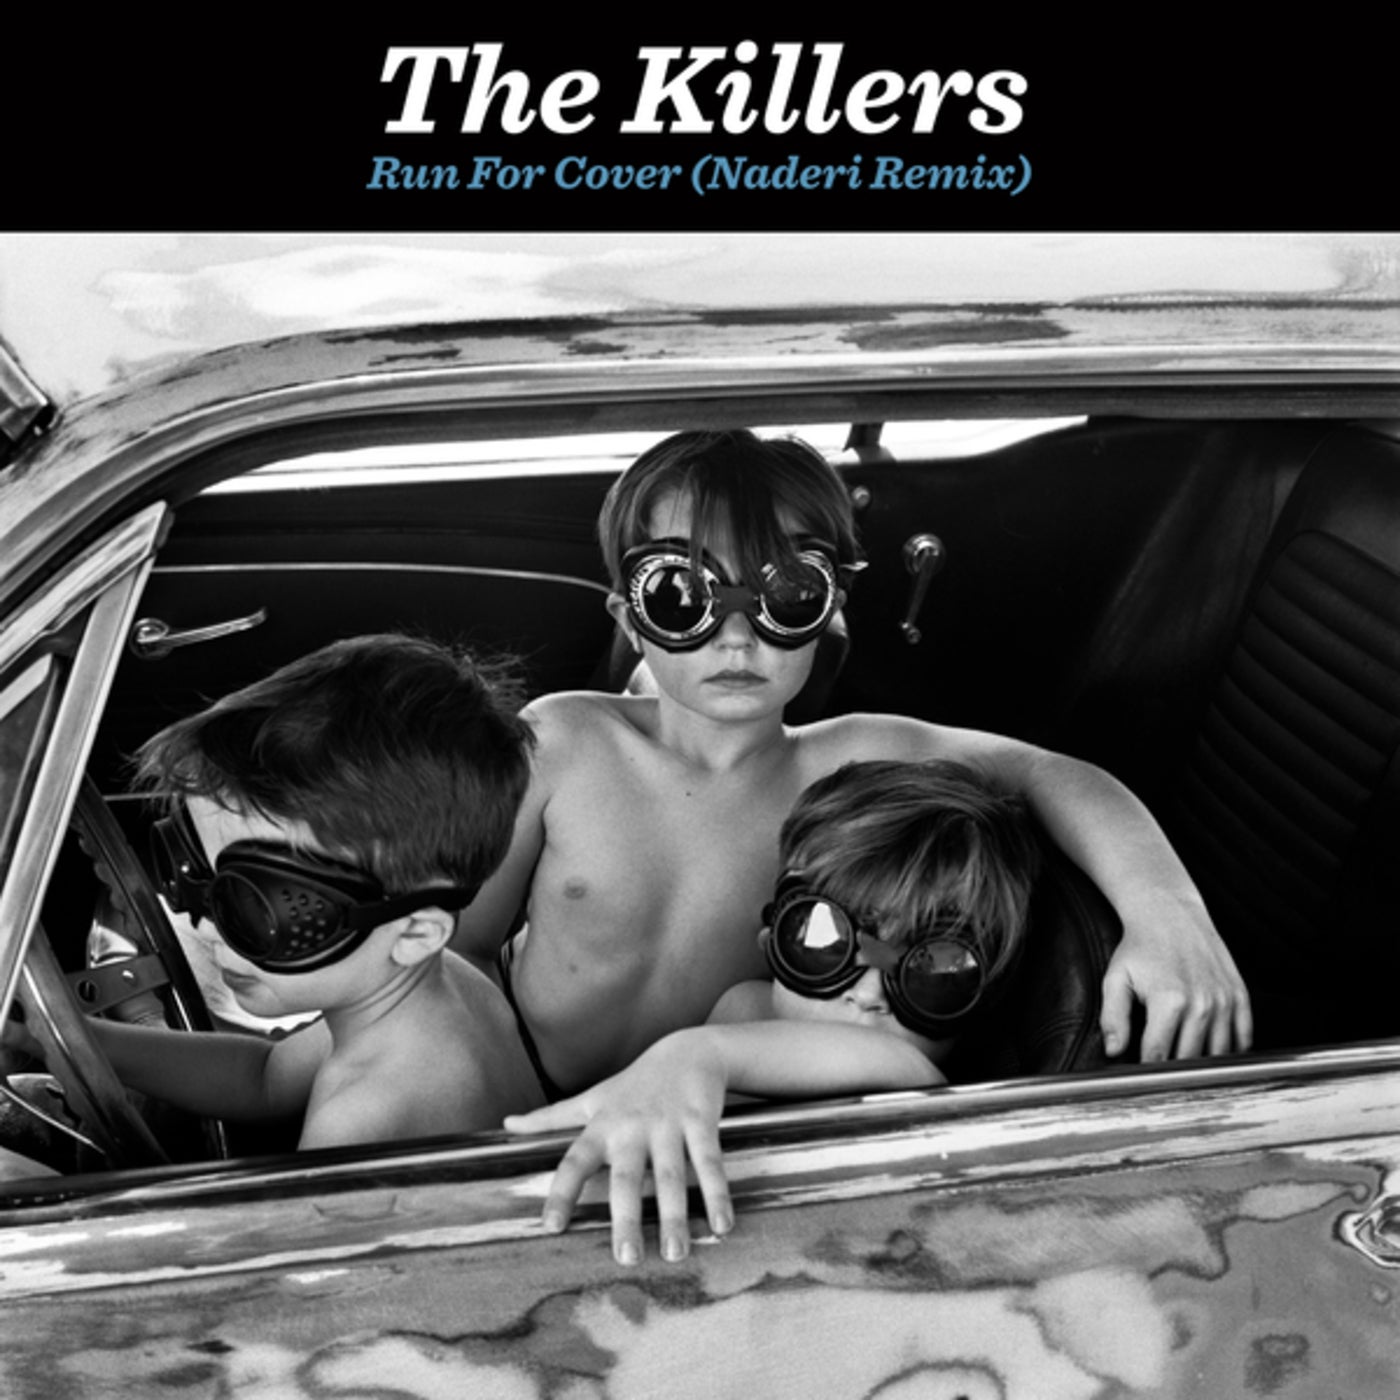 Running for cover. The Killers album. Run for Cover the Killers. The Killers album Cover. Run for Cover группа.